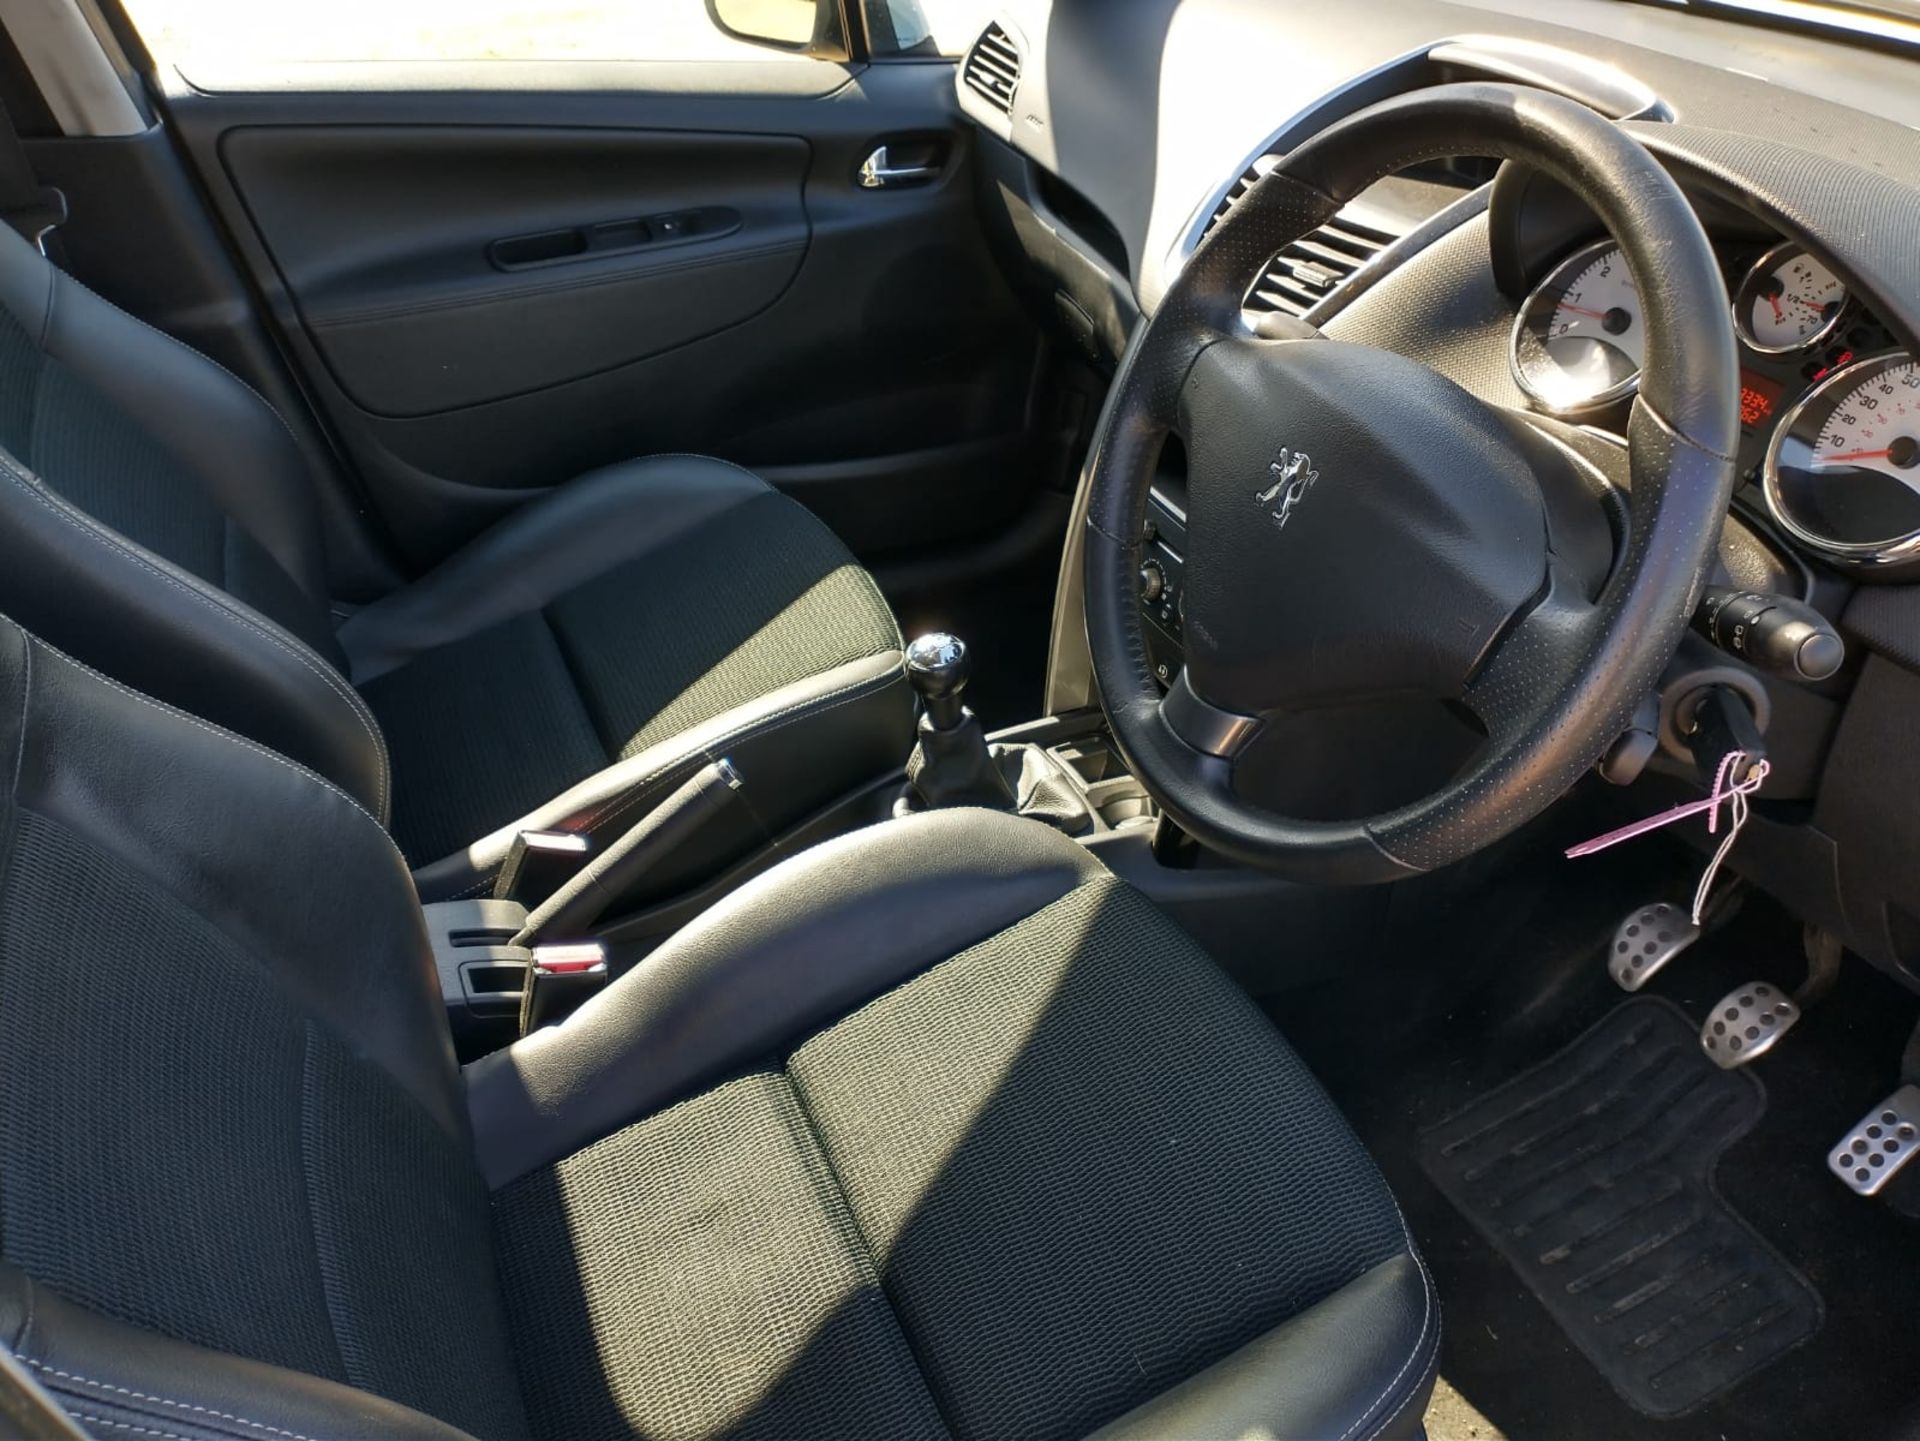 2012 Peugeot 207 Allure 1.6 5DR Hatchback - Image 3 of 16